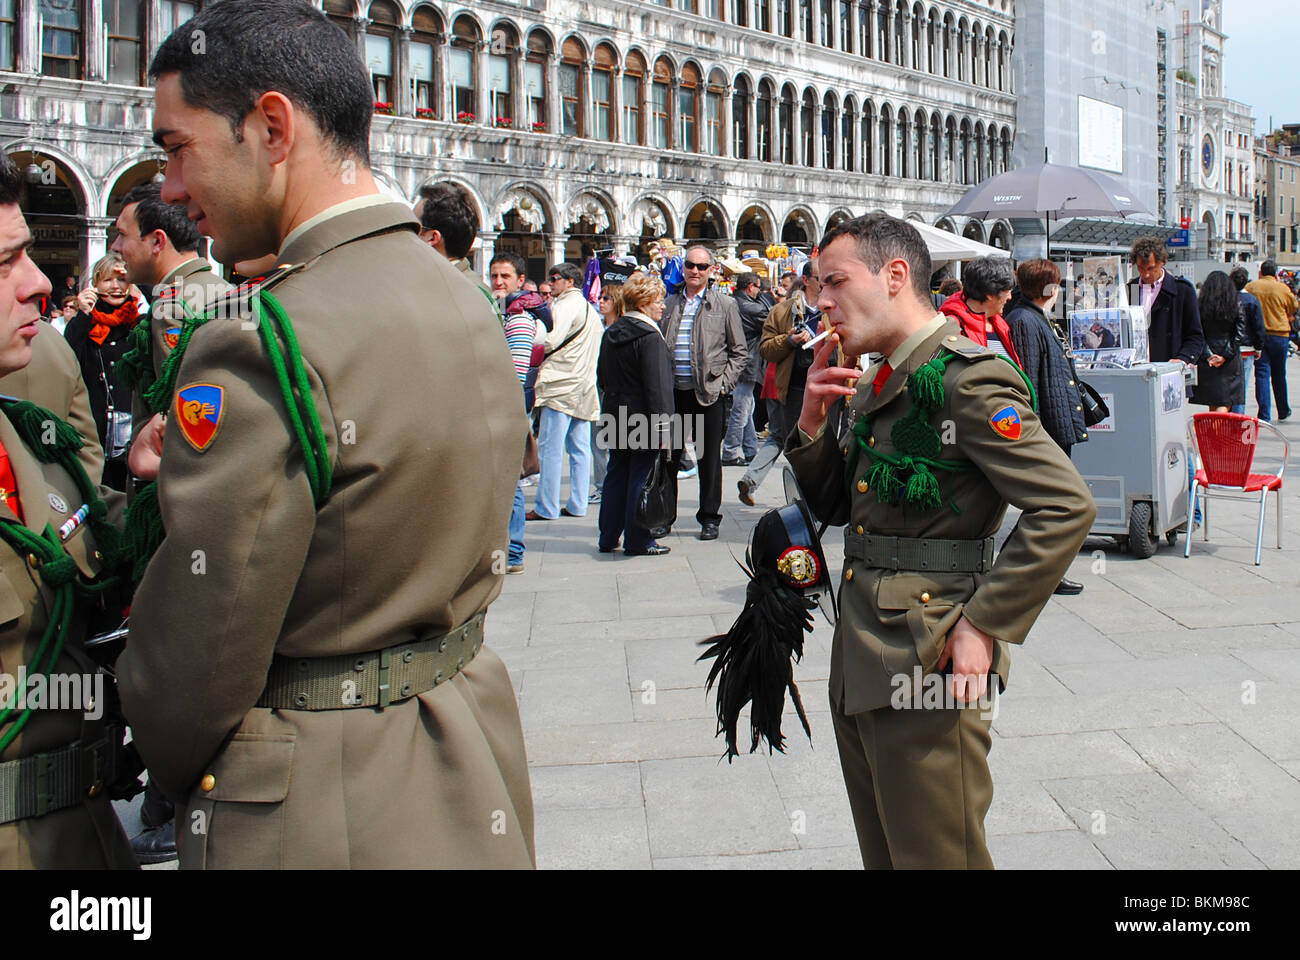 Italian soldiers smoke cigarettes in St Mark's Square, Venice, Italy Stock Photo